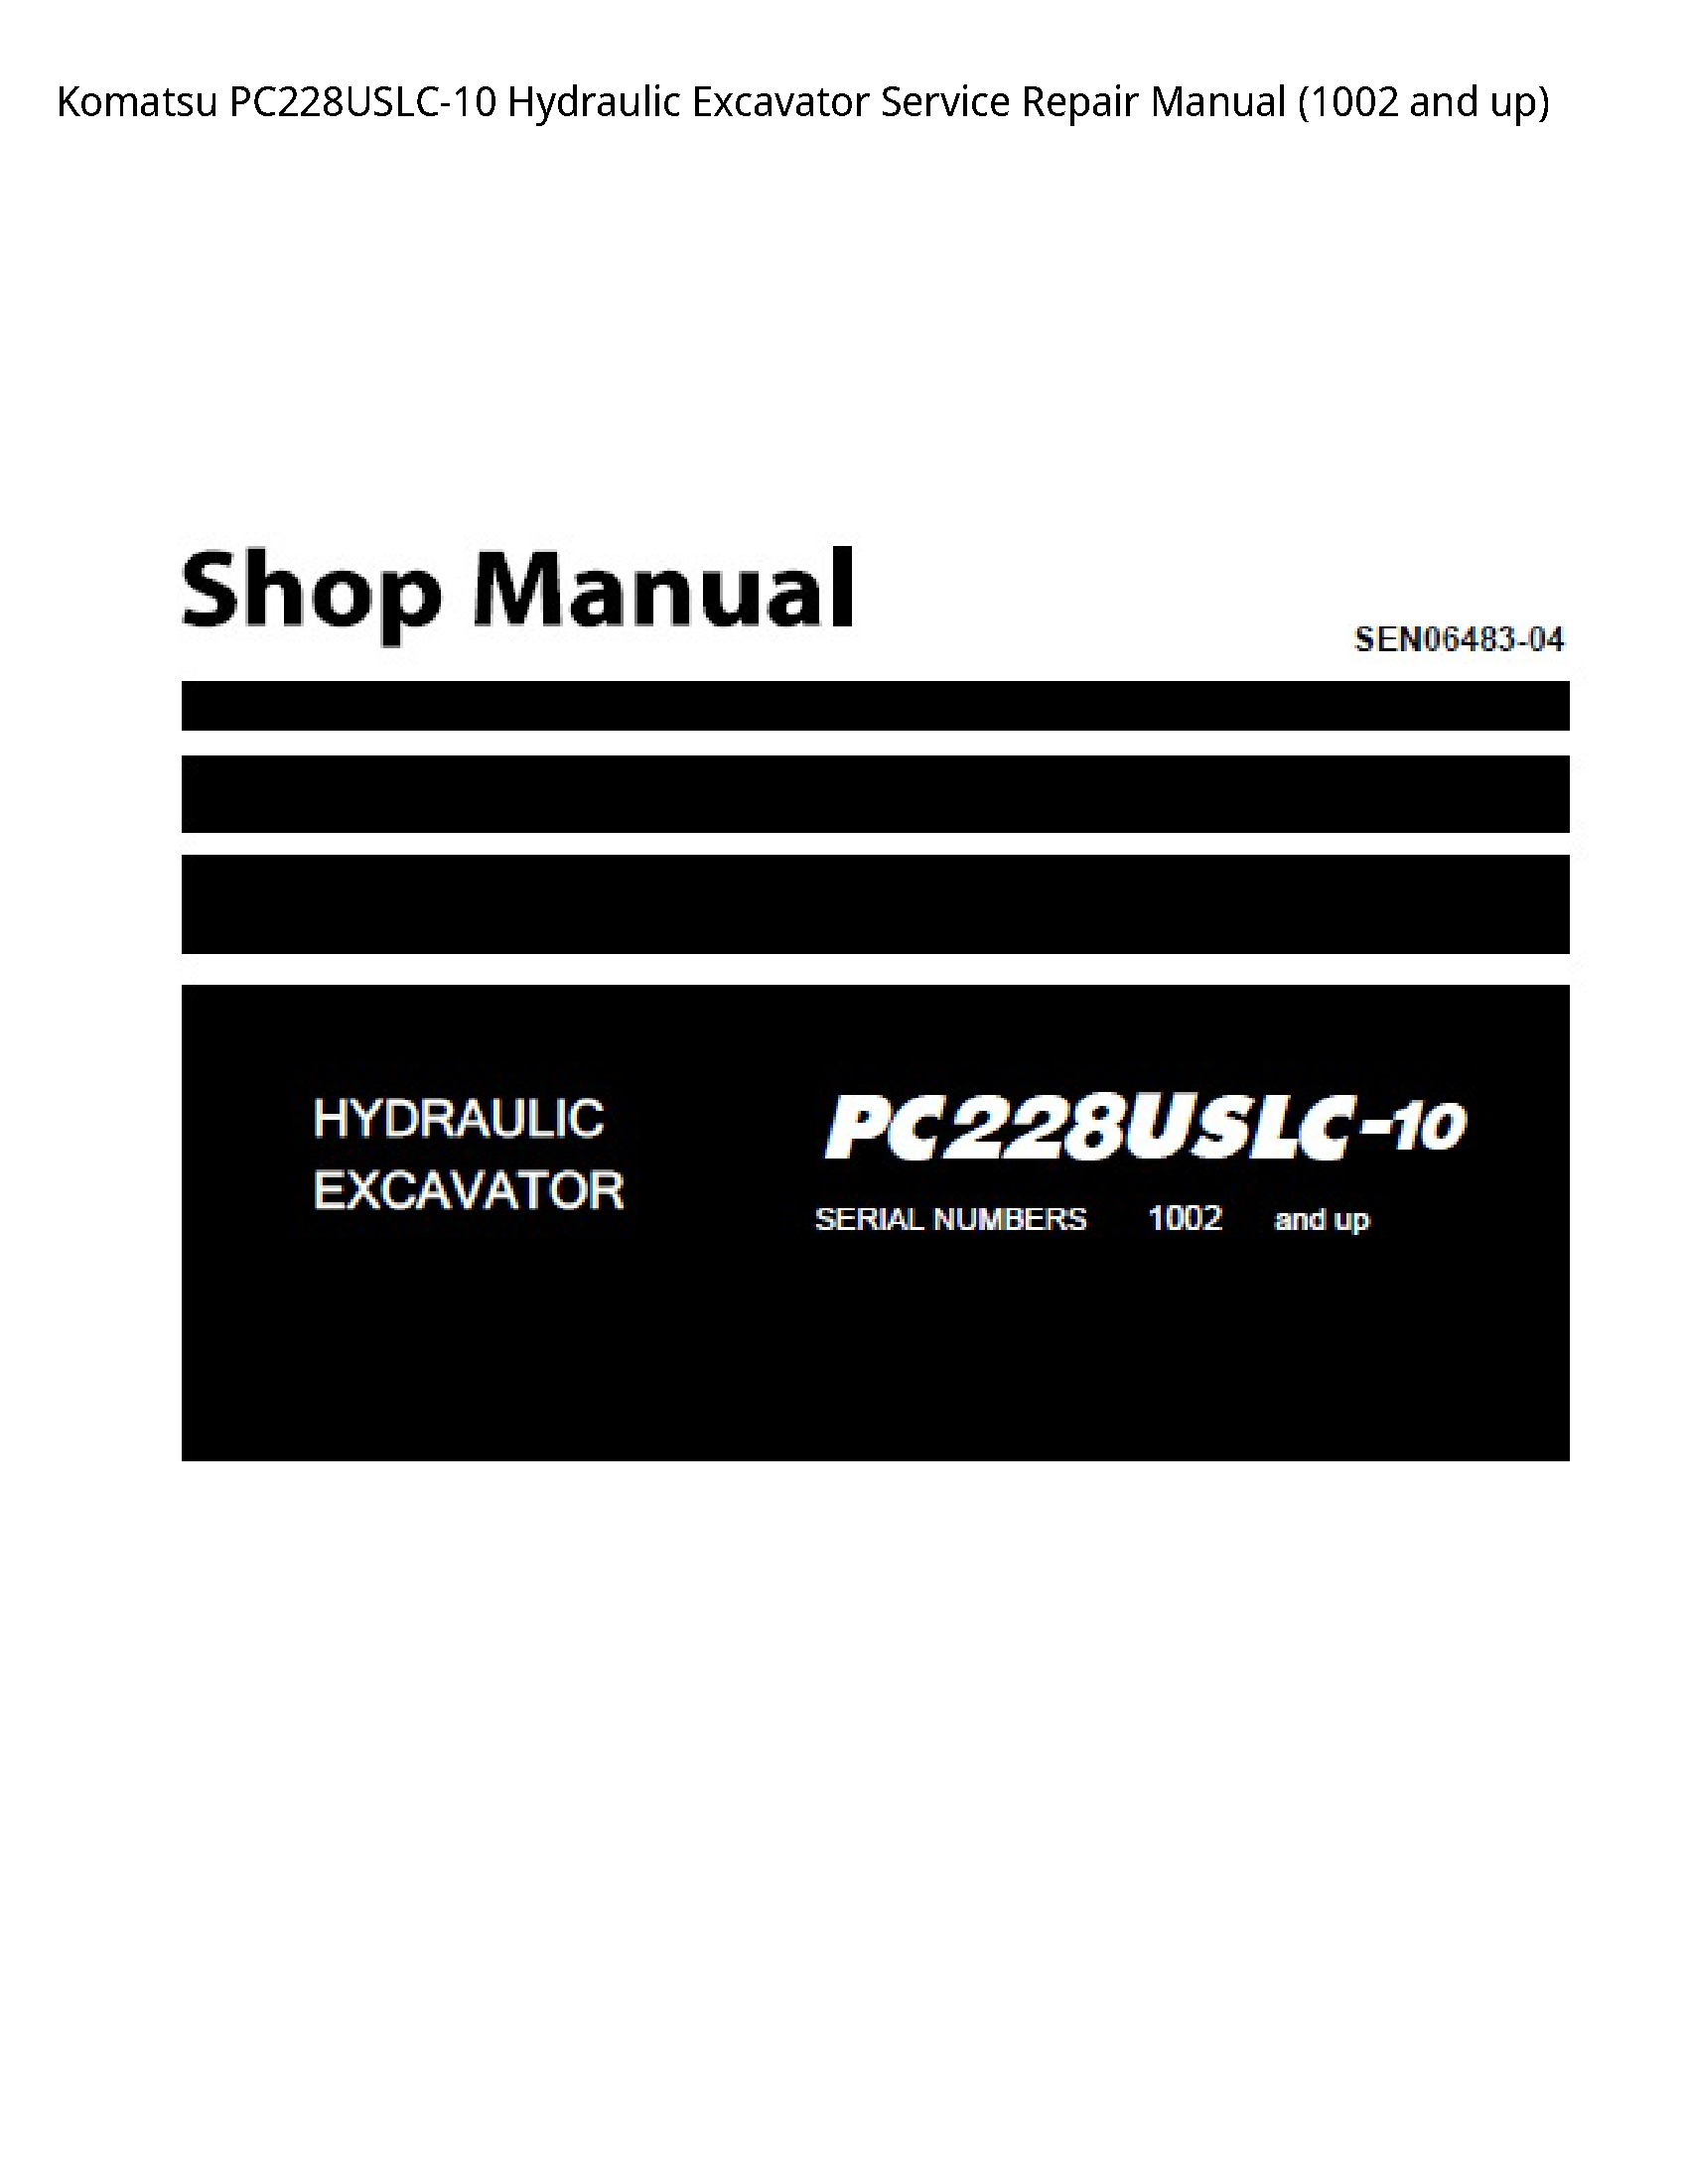 KOMATSU PC228USLC-10 Hydraulic Excavator manual